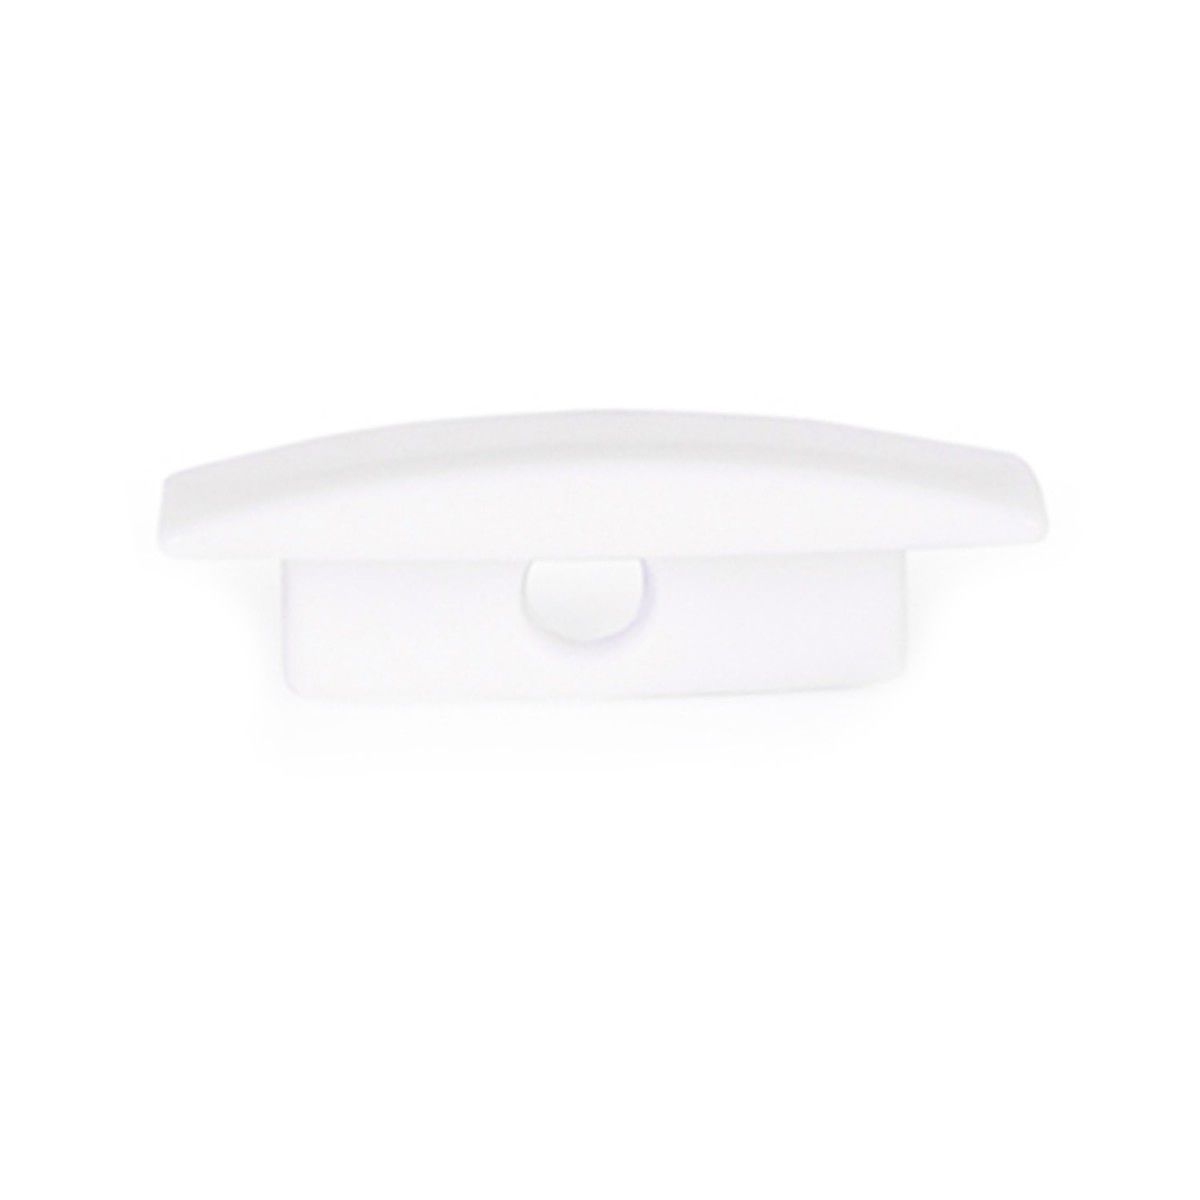 Caps for profile PXG-205 - Color white